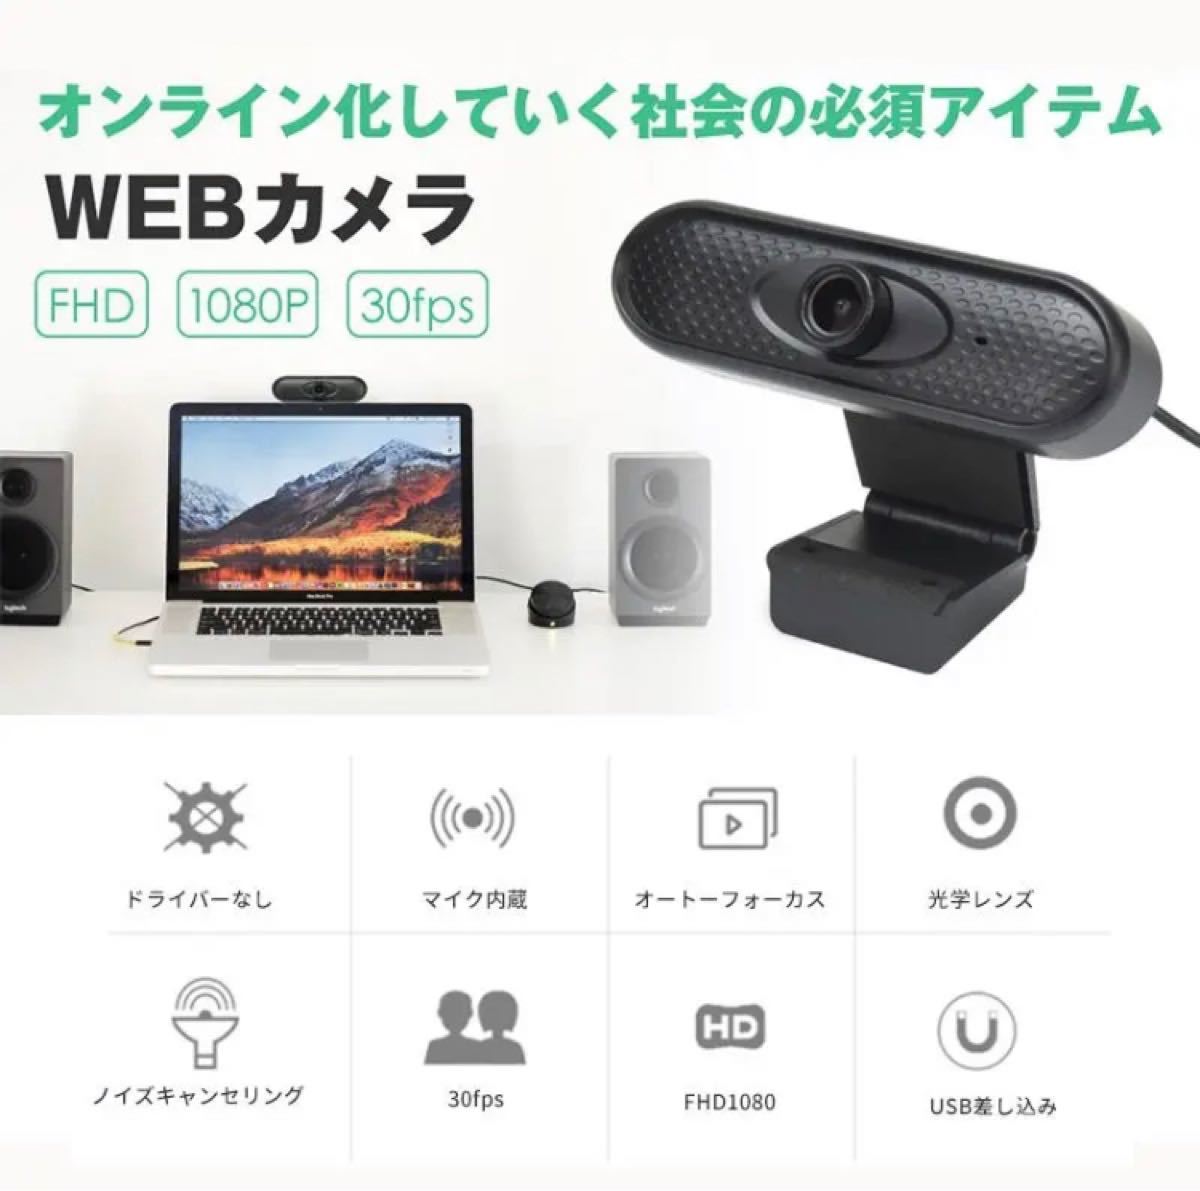 パソコンPCカメラ マイク Webカメラ マイク内蔵動画配信 在宅勤務